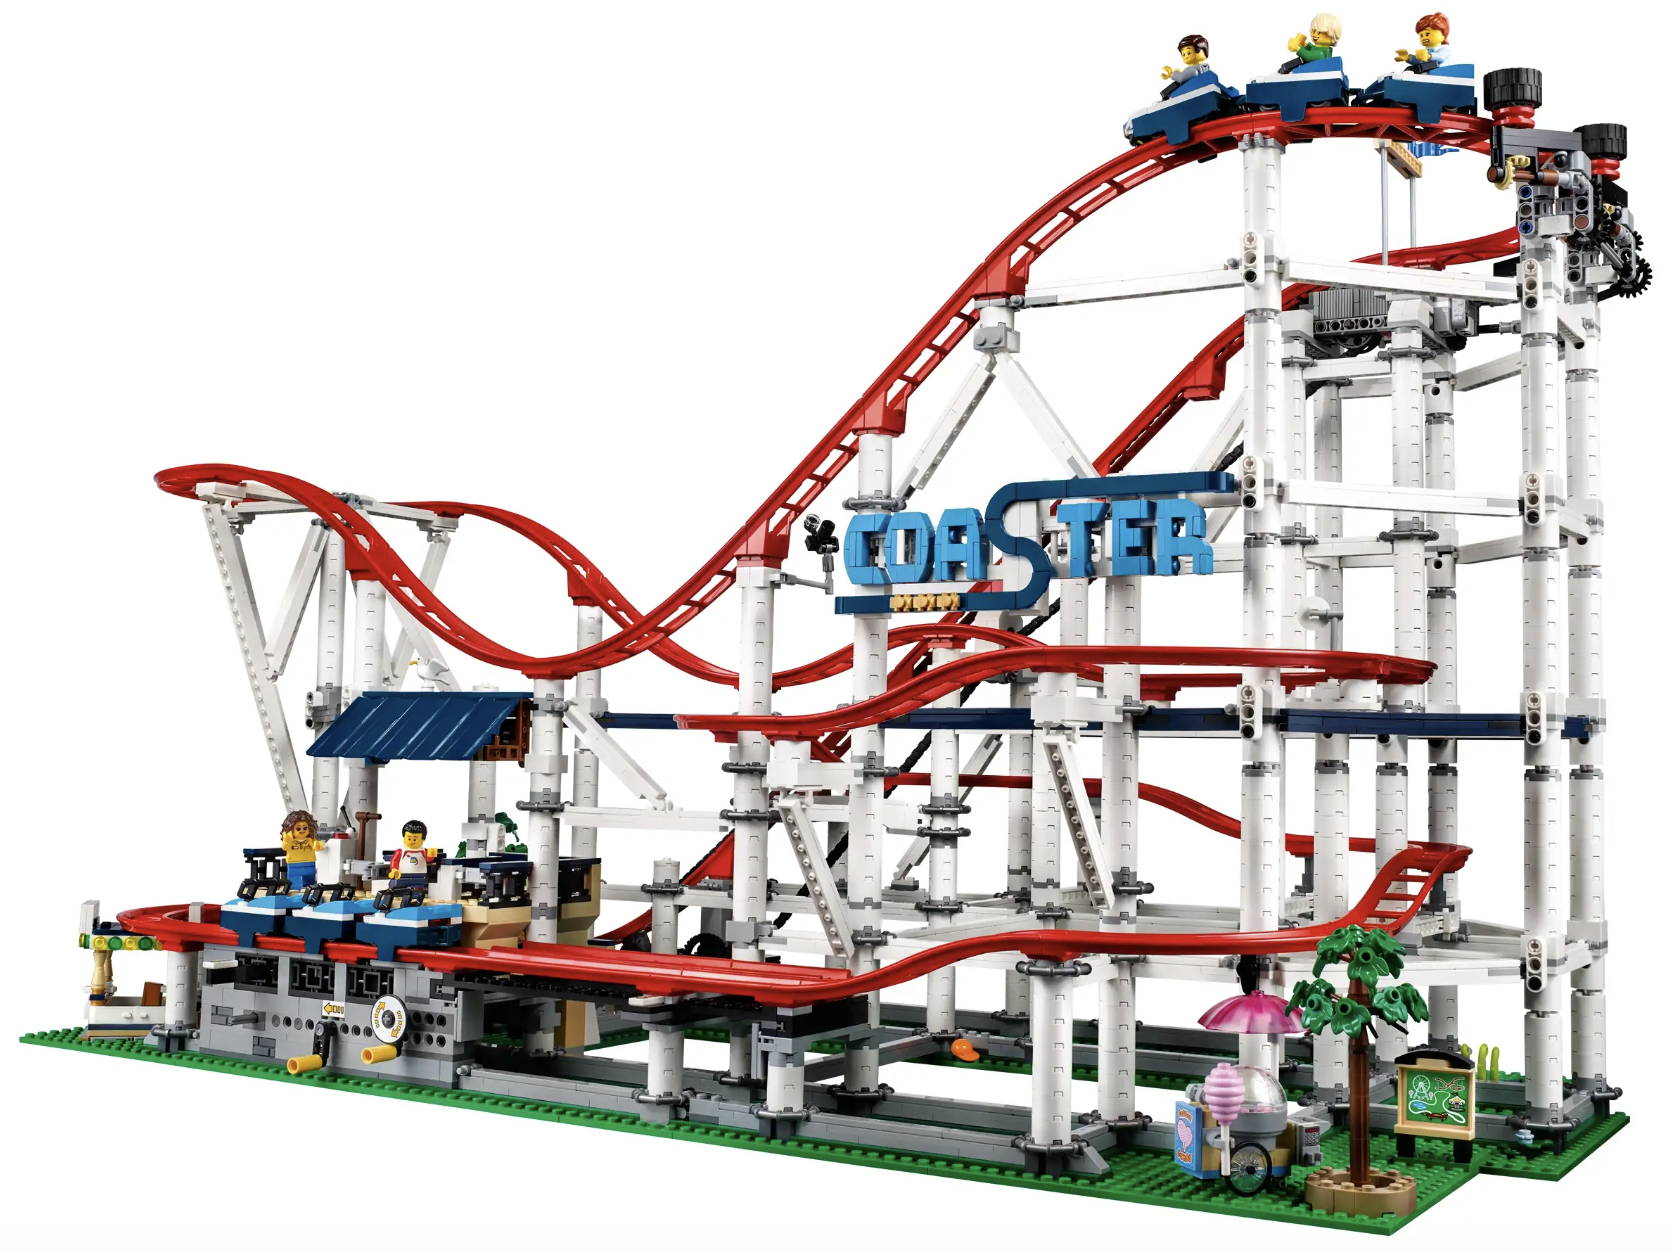 LEGO 10261